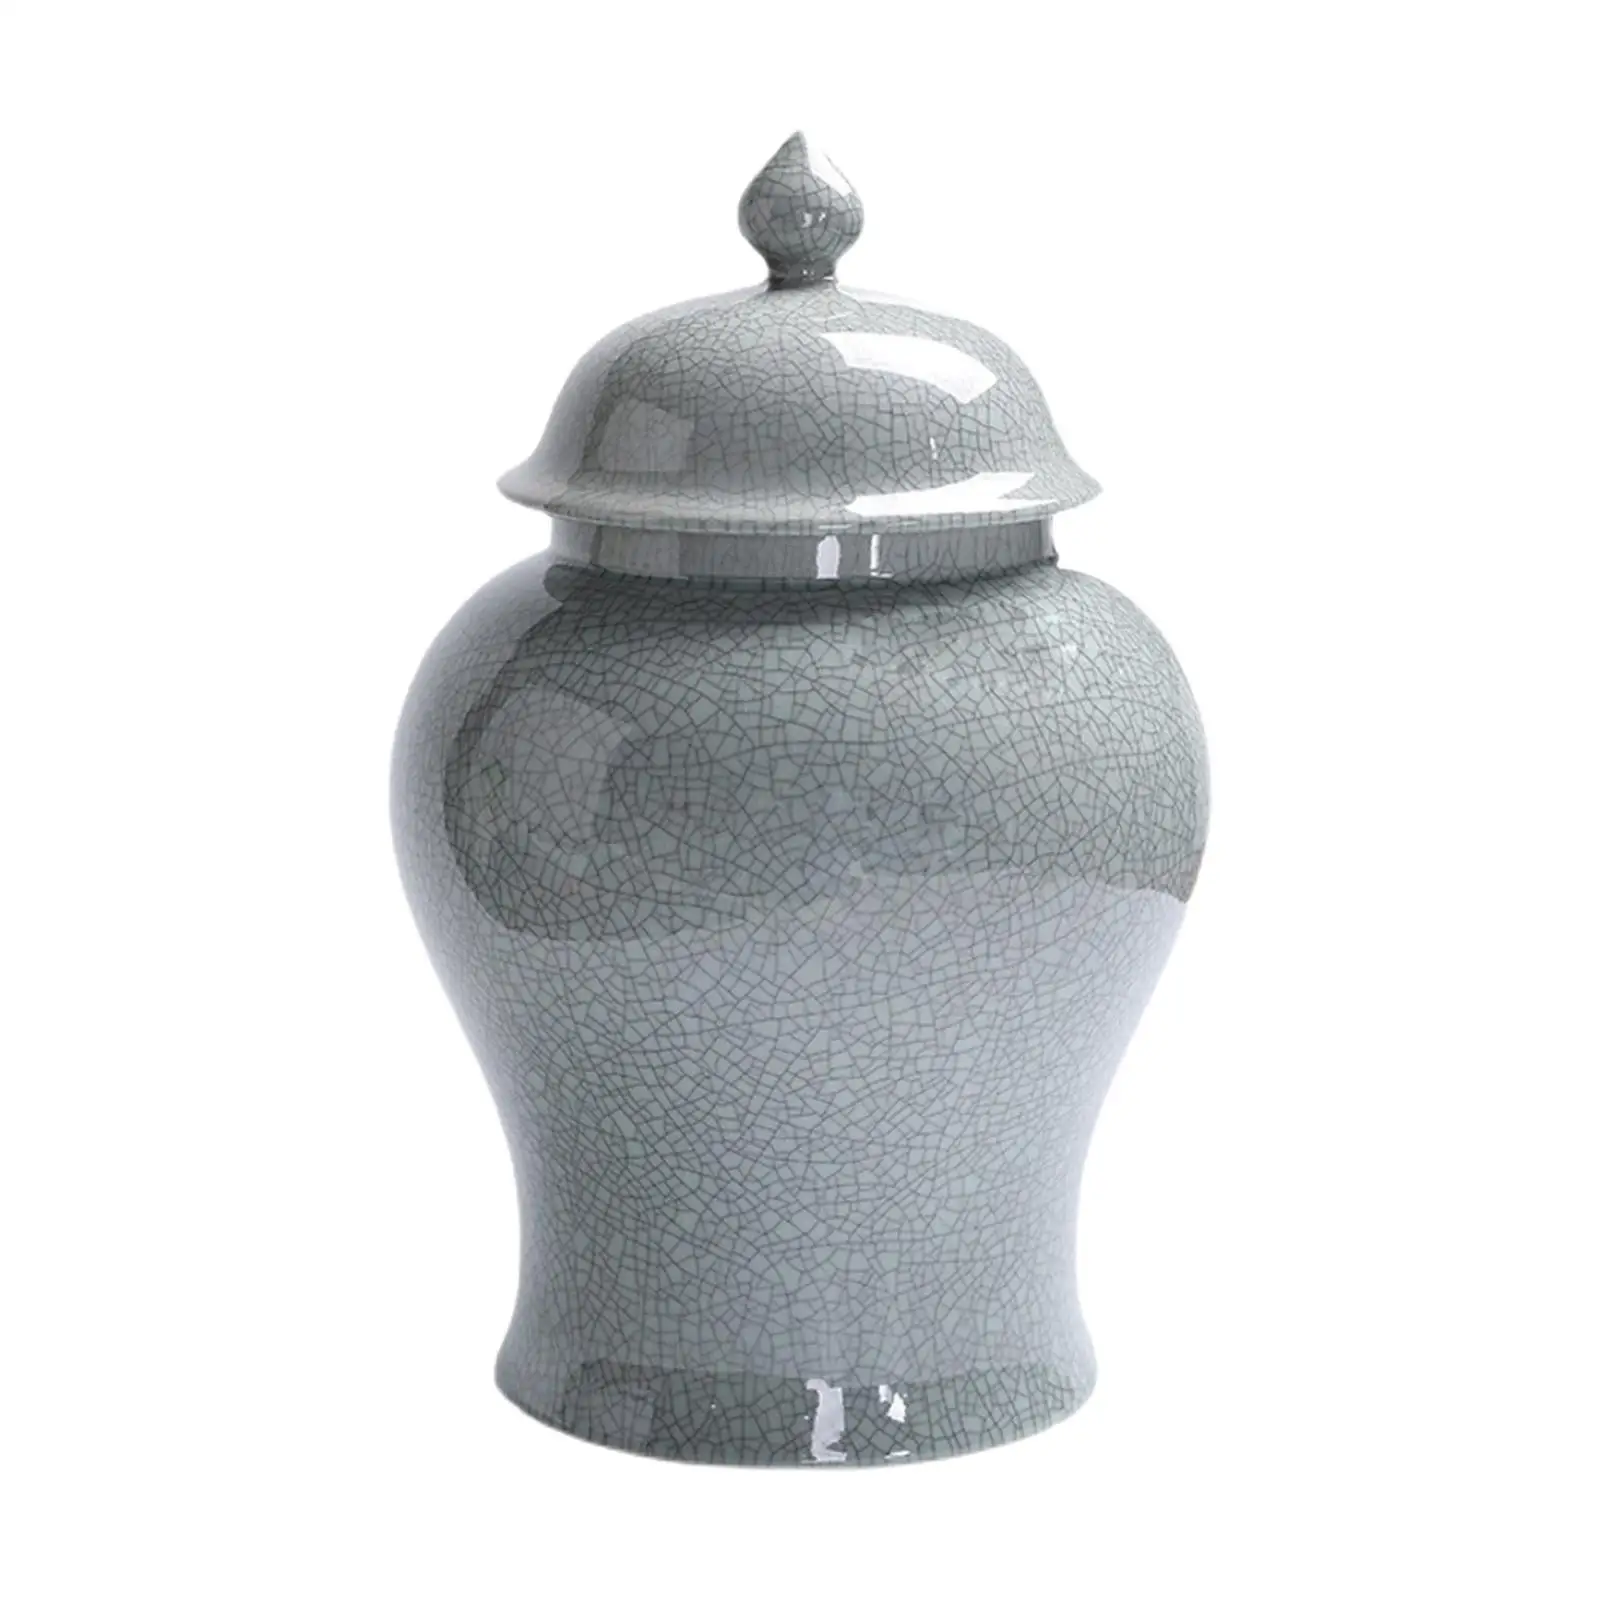 Ceramic Flower Vase Storage Bottle Collectible Porcelain Ginger Jar for Art Decor